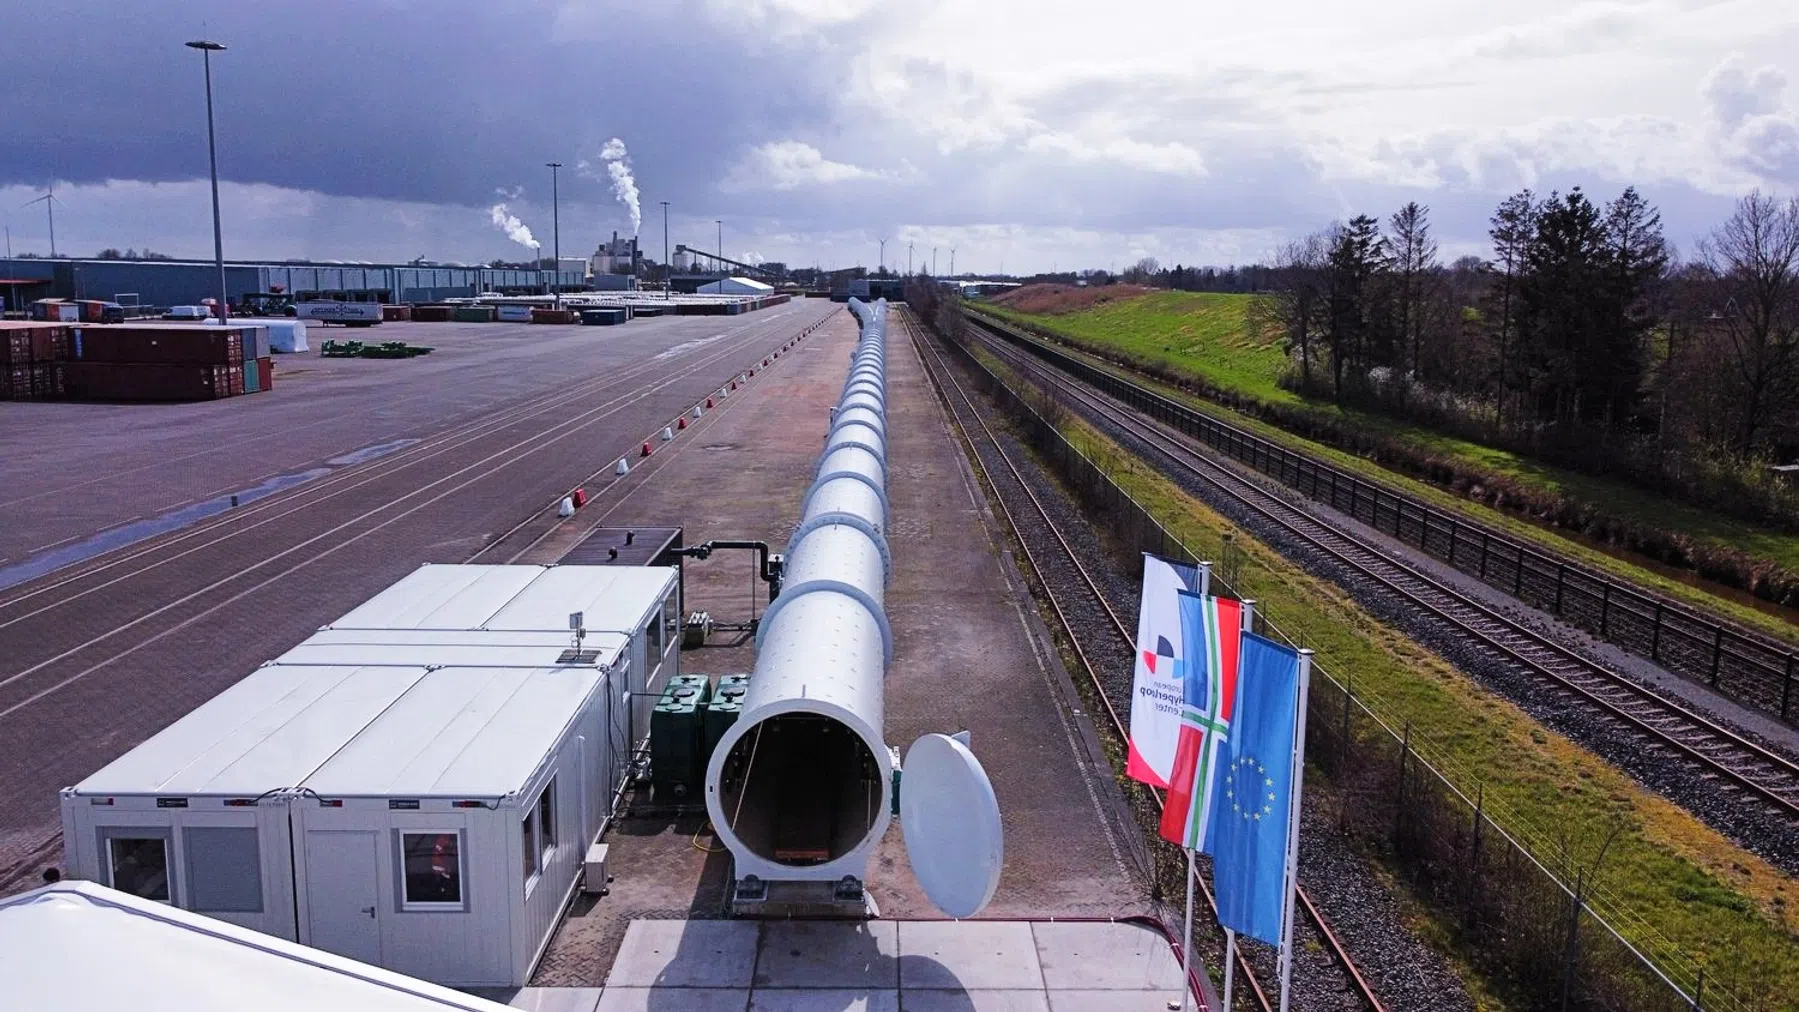 Tests met hyperloop gaan van start in Veendam: 'Cruciaal moment'